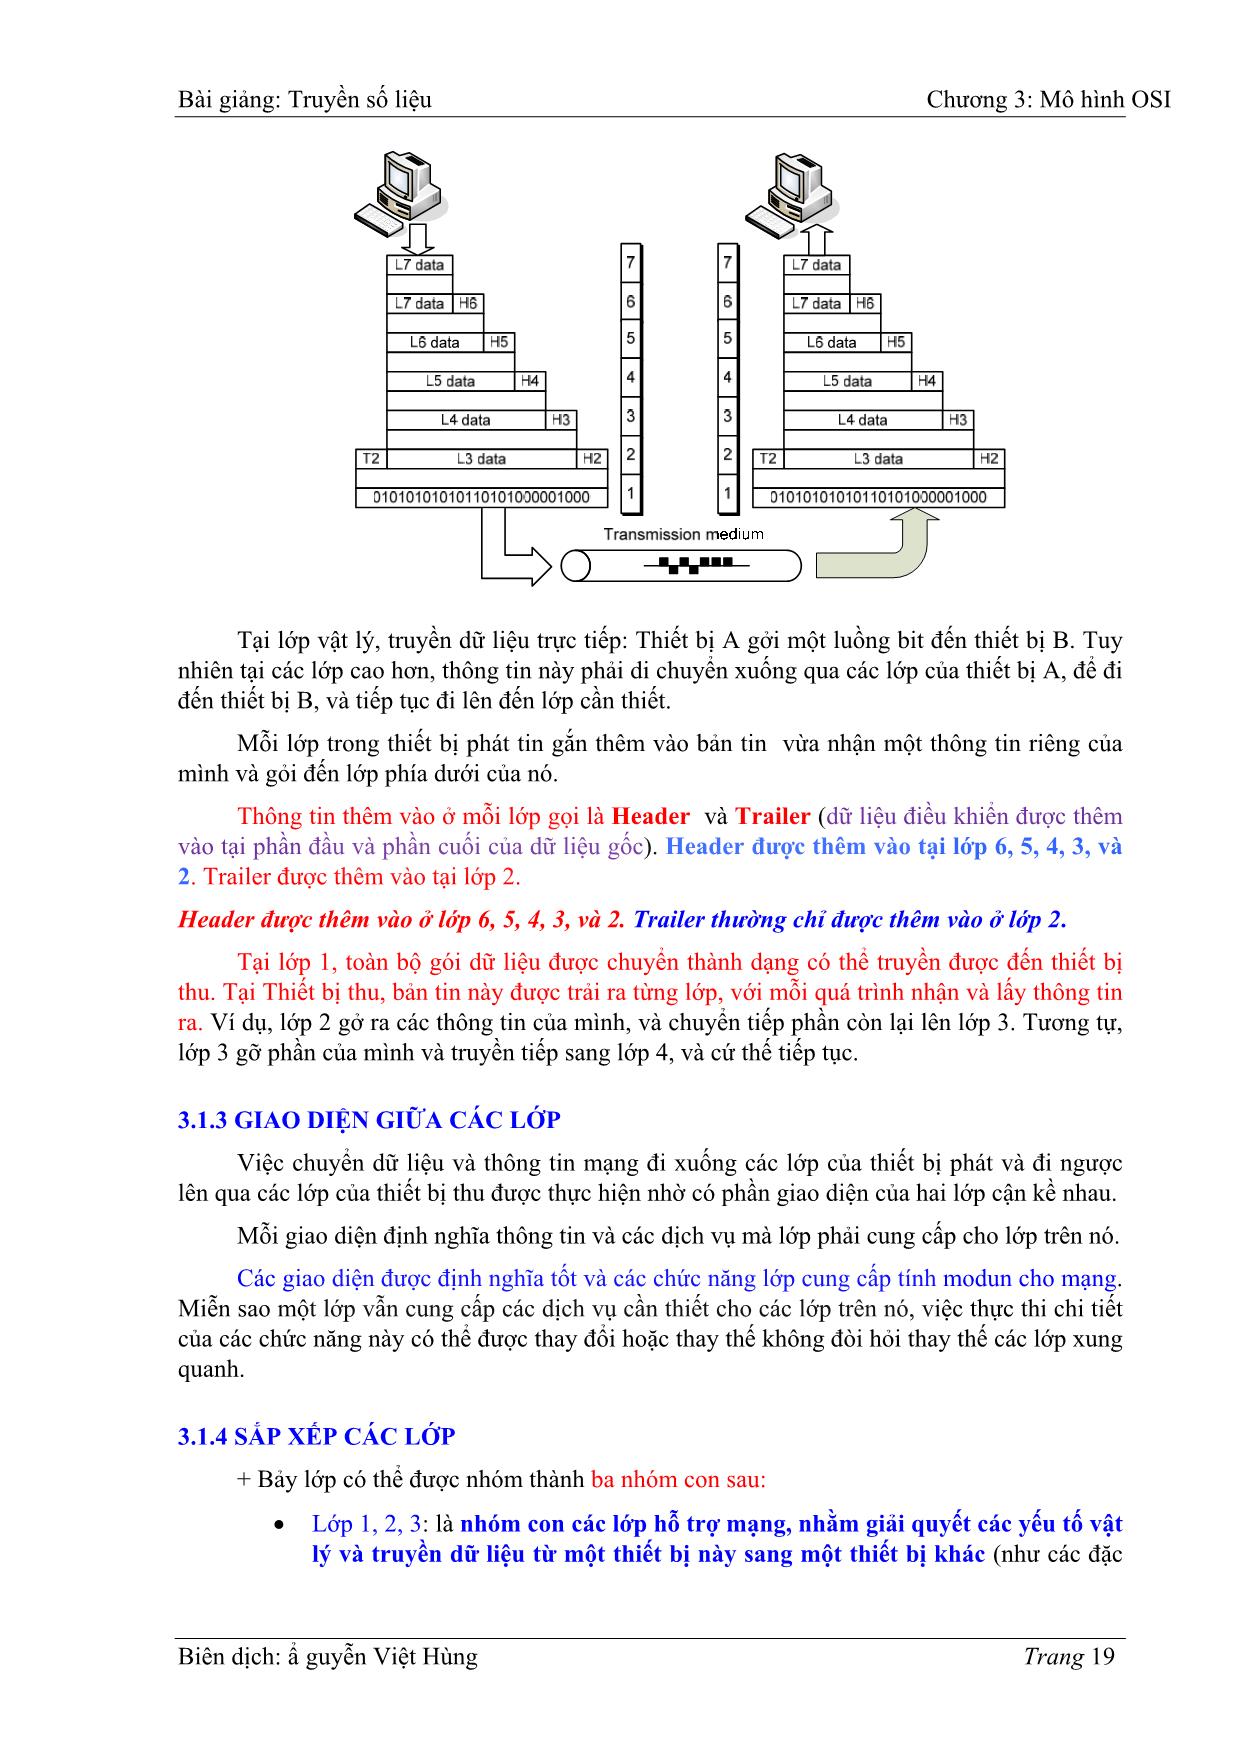 Bài giảng Truyền số liệu - Chương 3: Mô hình OIS - Nguyễn Việt Hùng trang 3